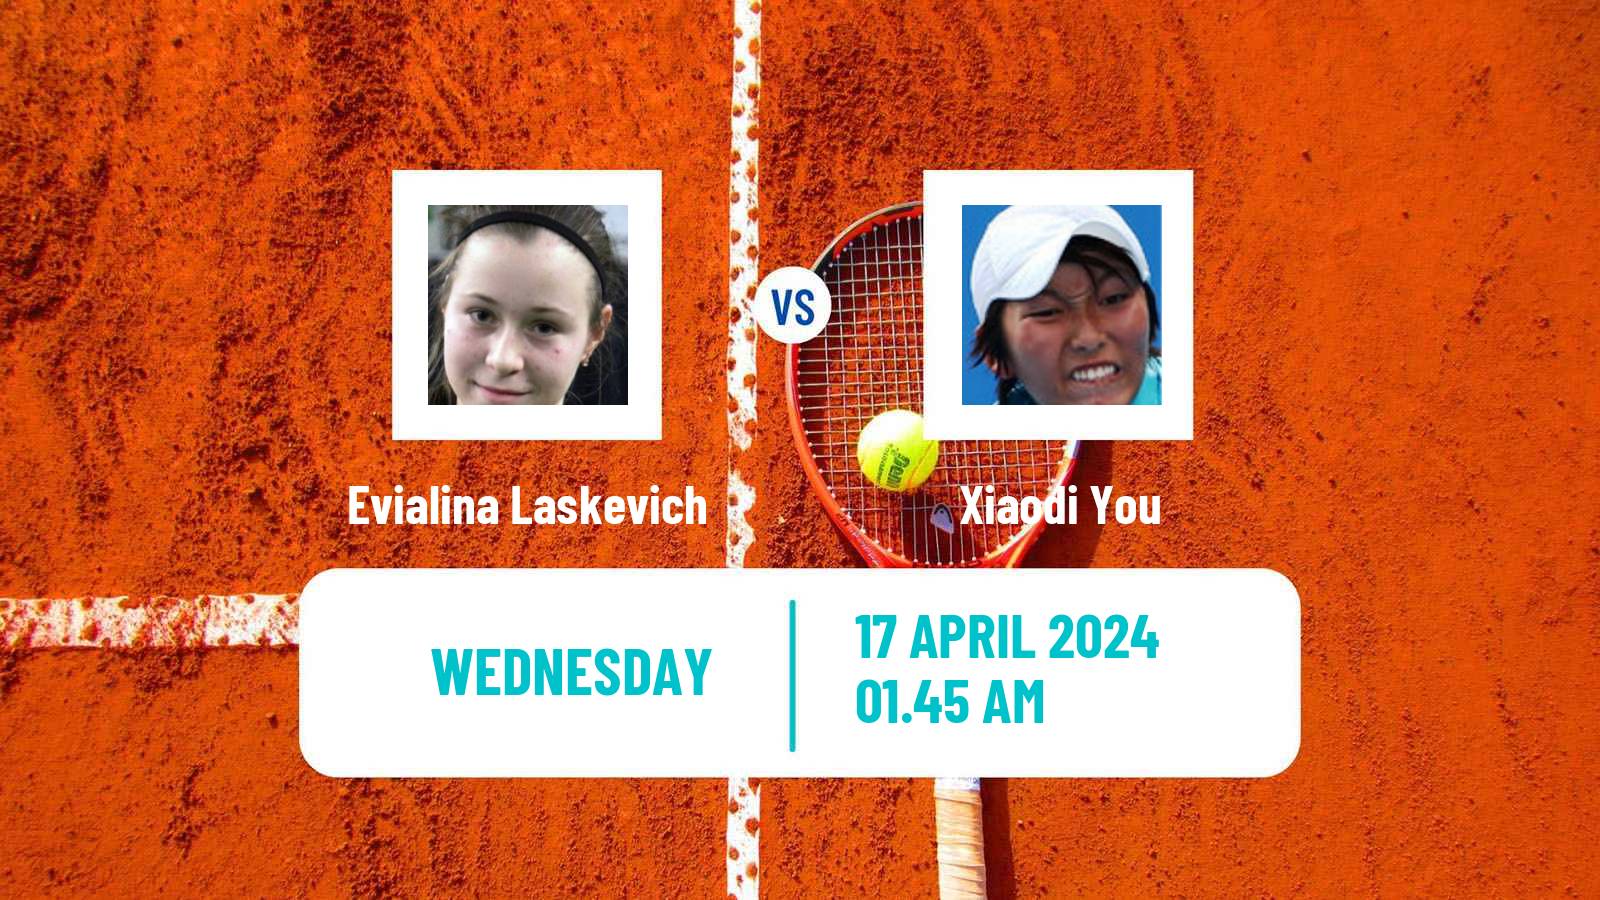 Tennis ITF W50 Shenzhen 2 Women Evialina Laskevich - Xiaodi You